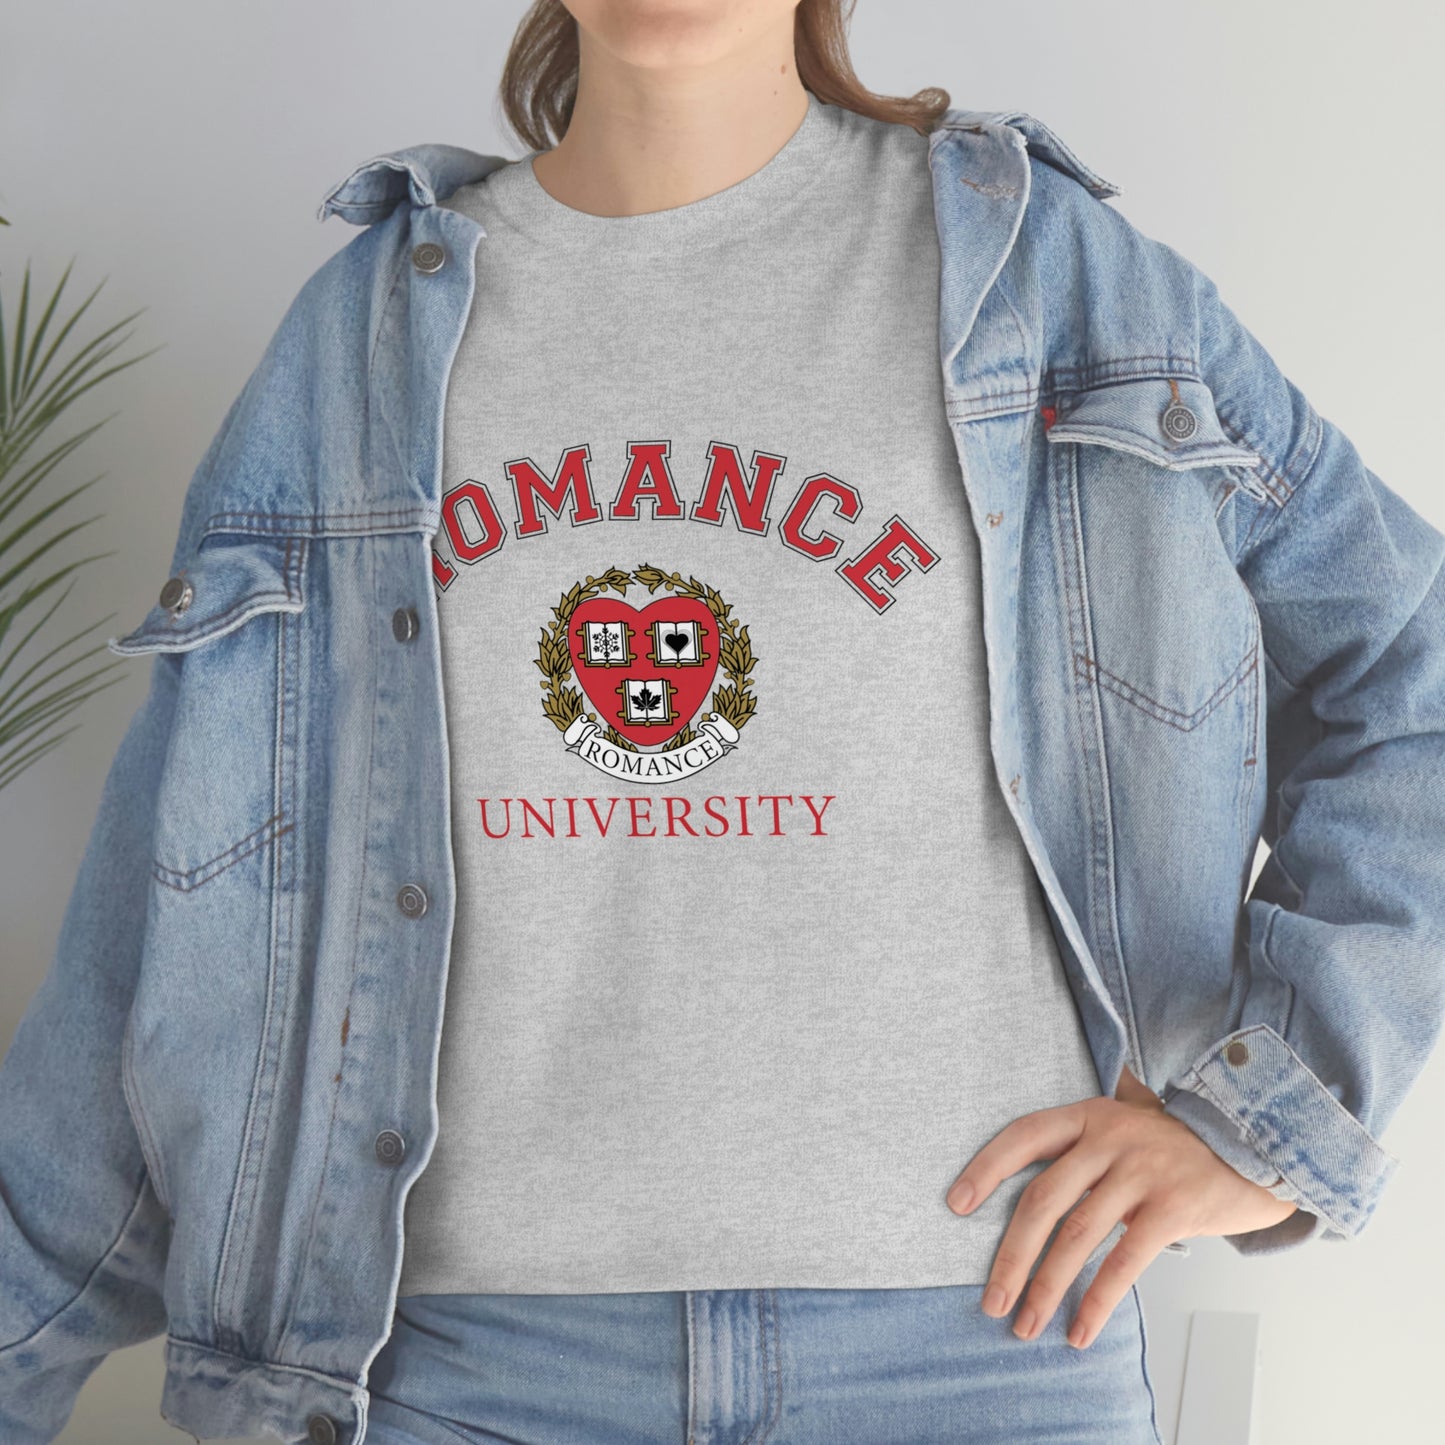 Romance University Heavy Cotton Tee